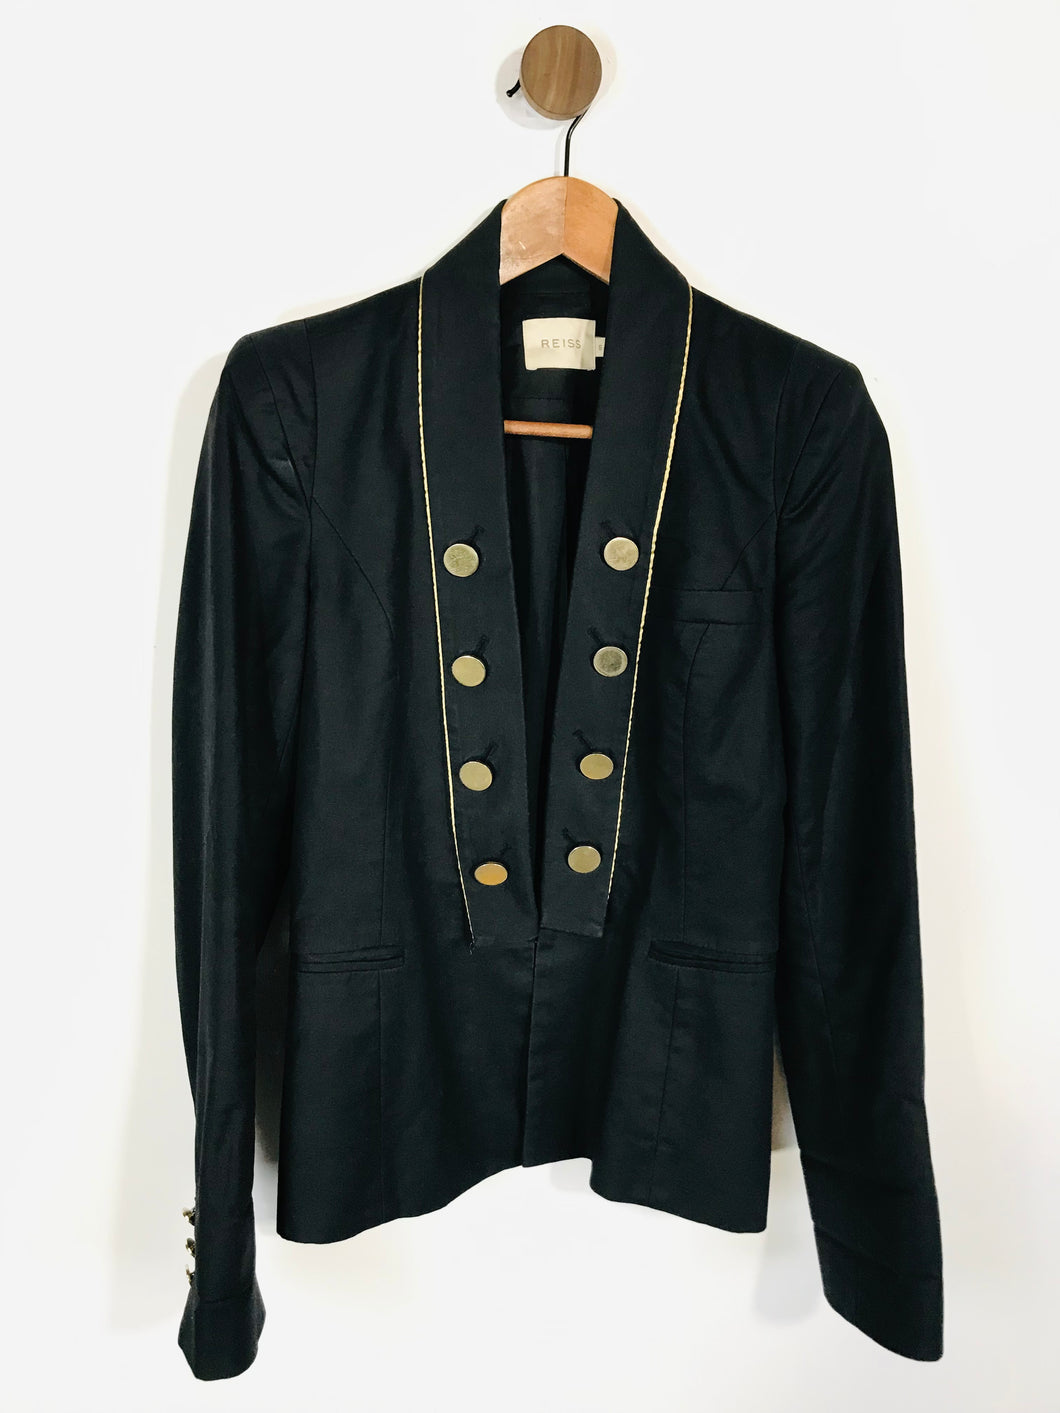 Reiss Women's Smart Blazer Jacket | S UK8 | Black